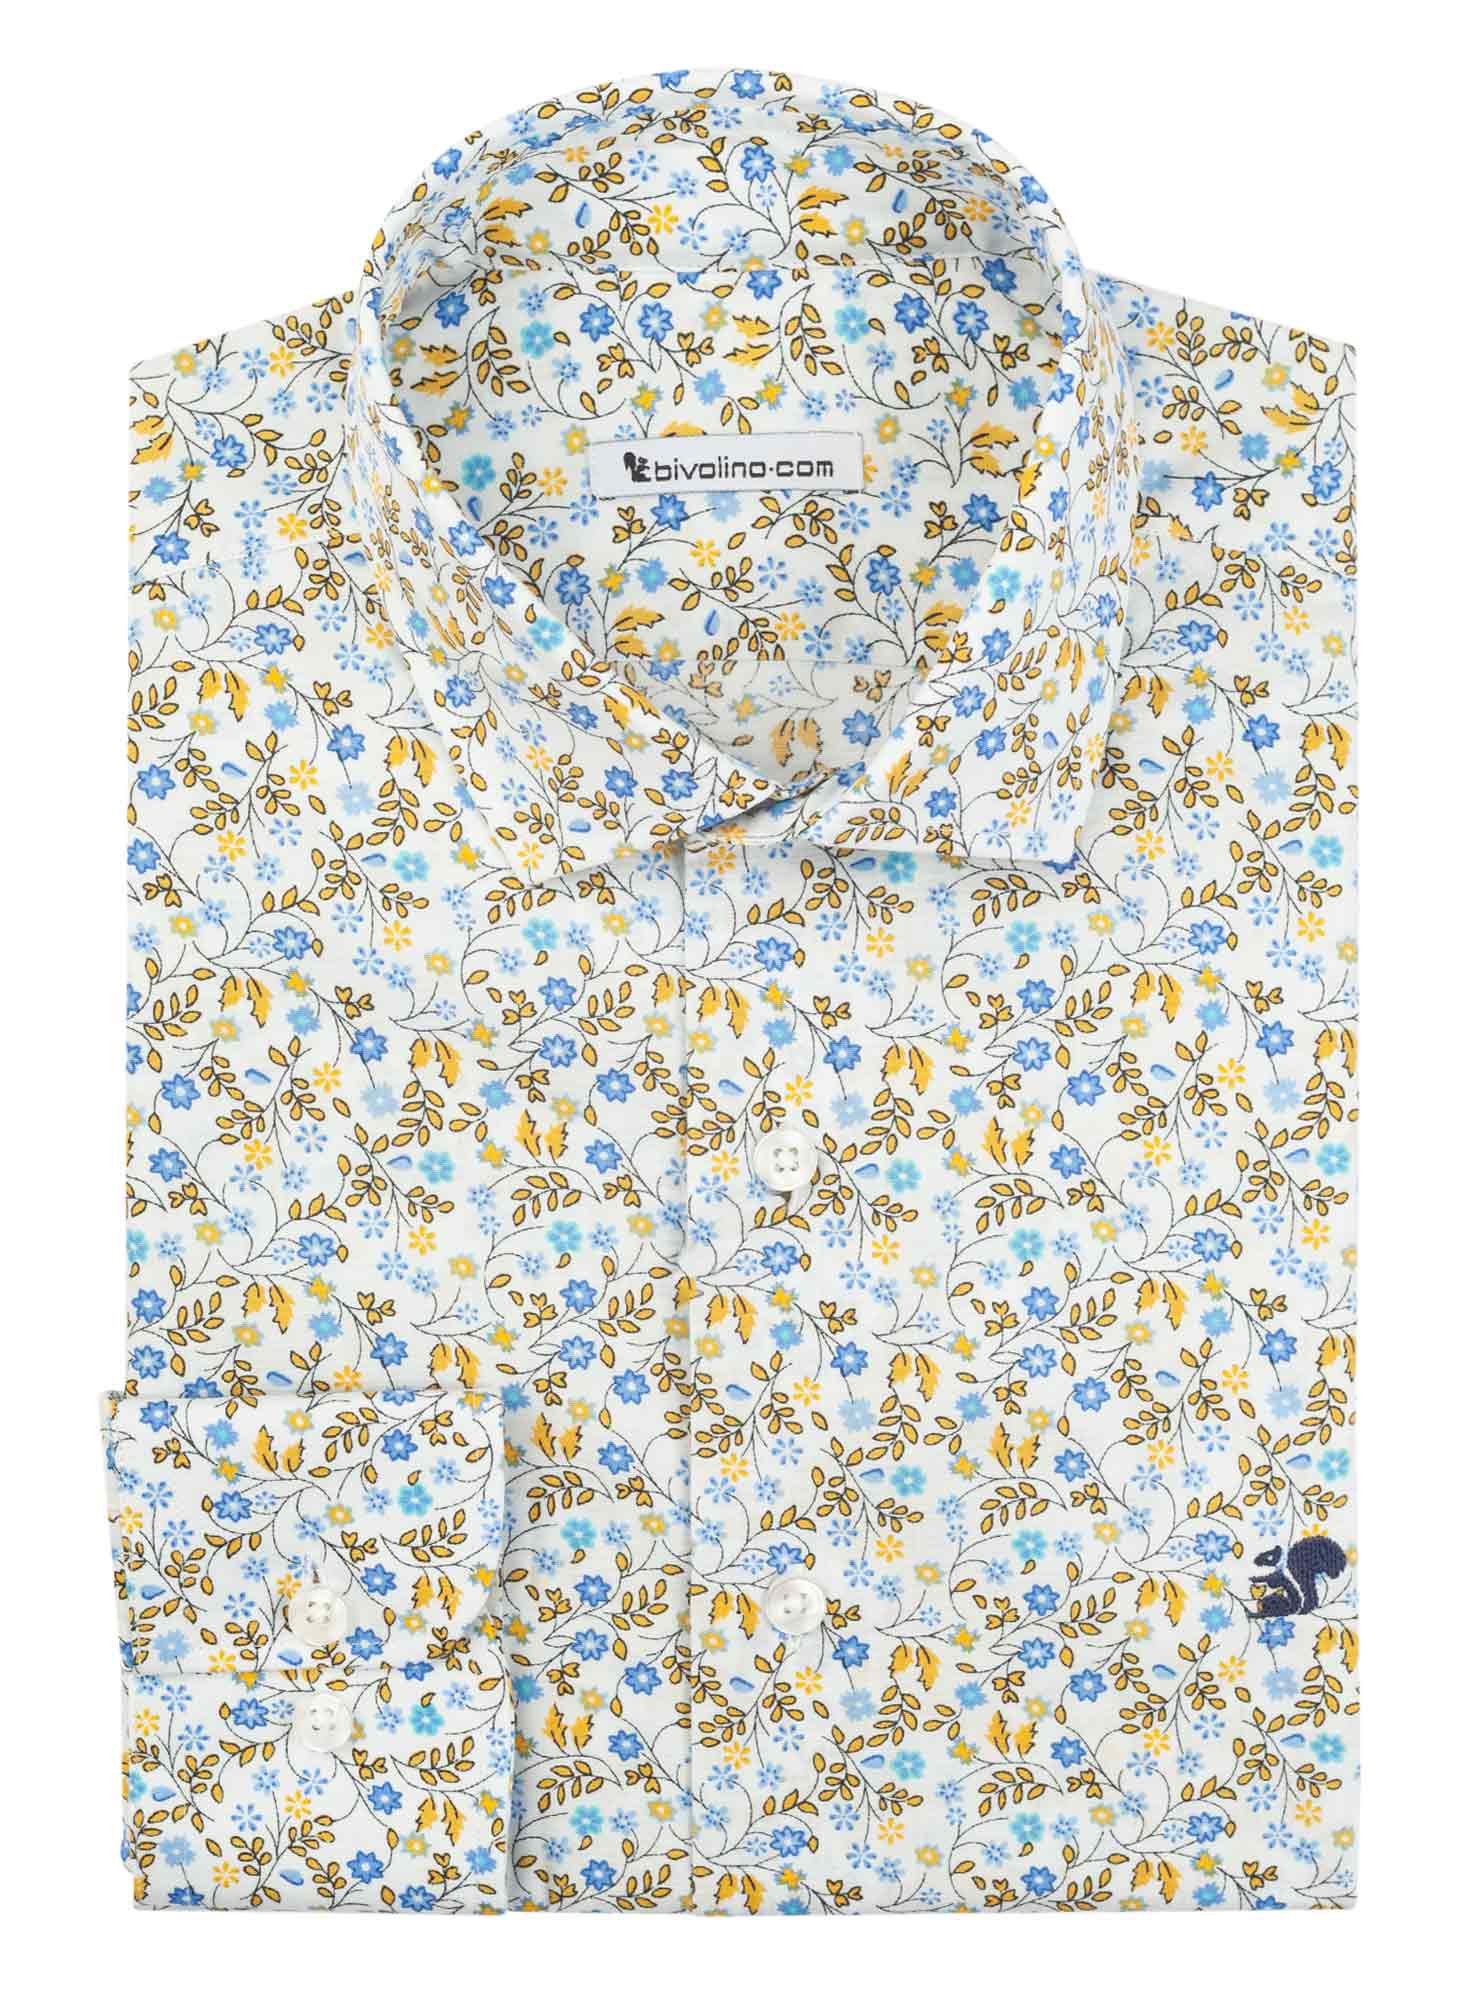 NOVARAA - chemise homme sur mesure Popeline imprimée fleurs - Tivol 5